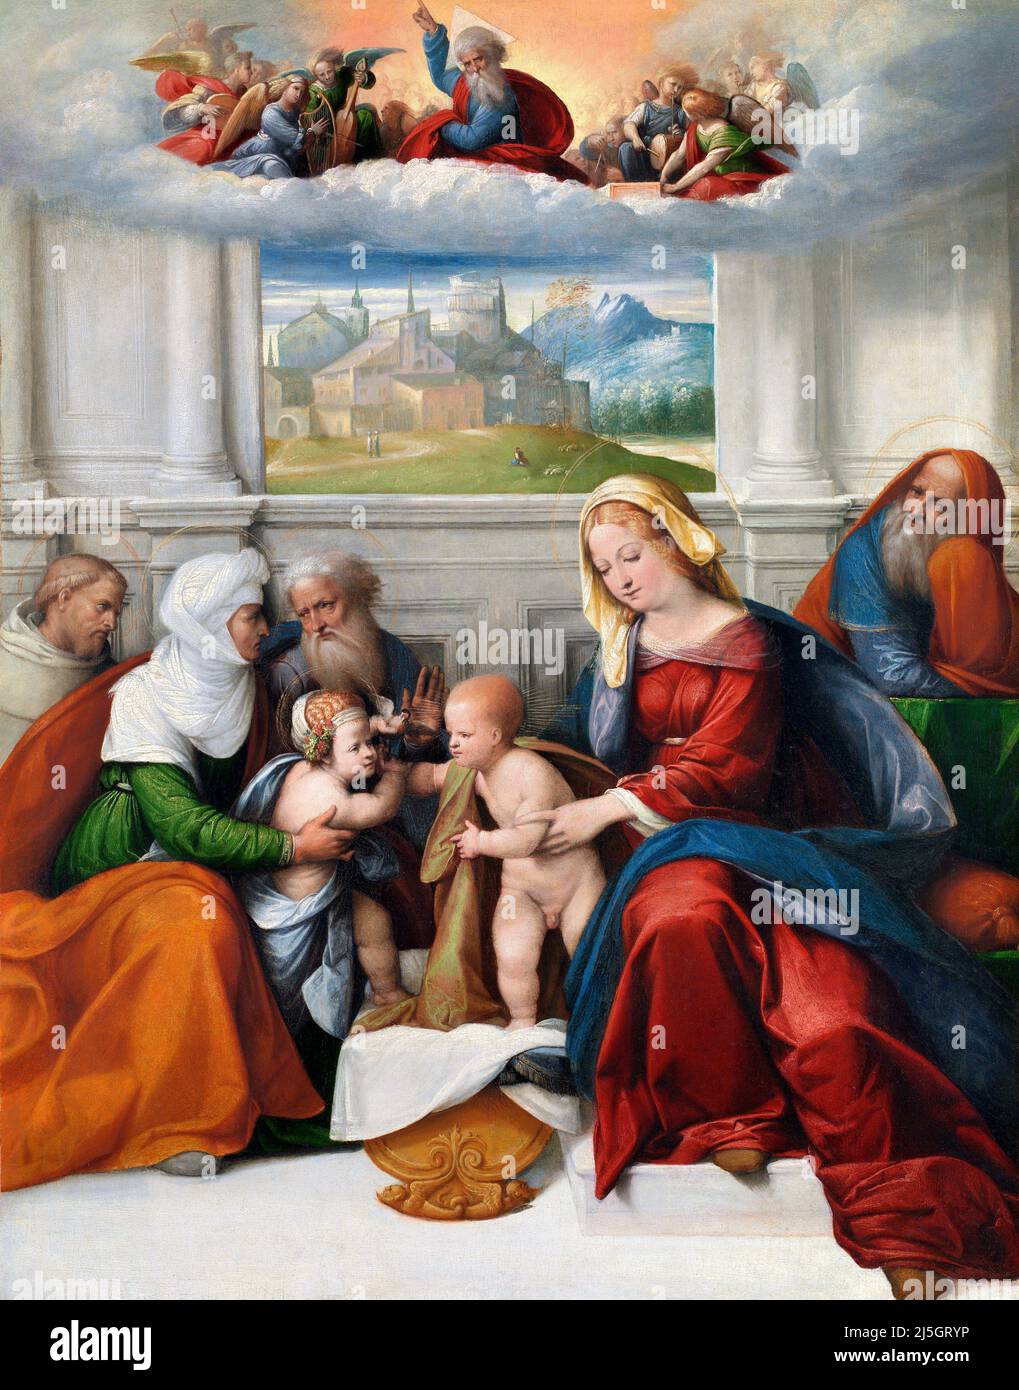 La Sainte famille avec les saints Elizabeth, Zacharias, Jean-Baptiste (et François ?) Par il Garofalo (1481-1559), huile sur toile transférée du bois, c. 1520-35 Banque D'Images